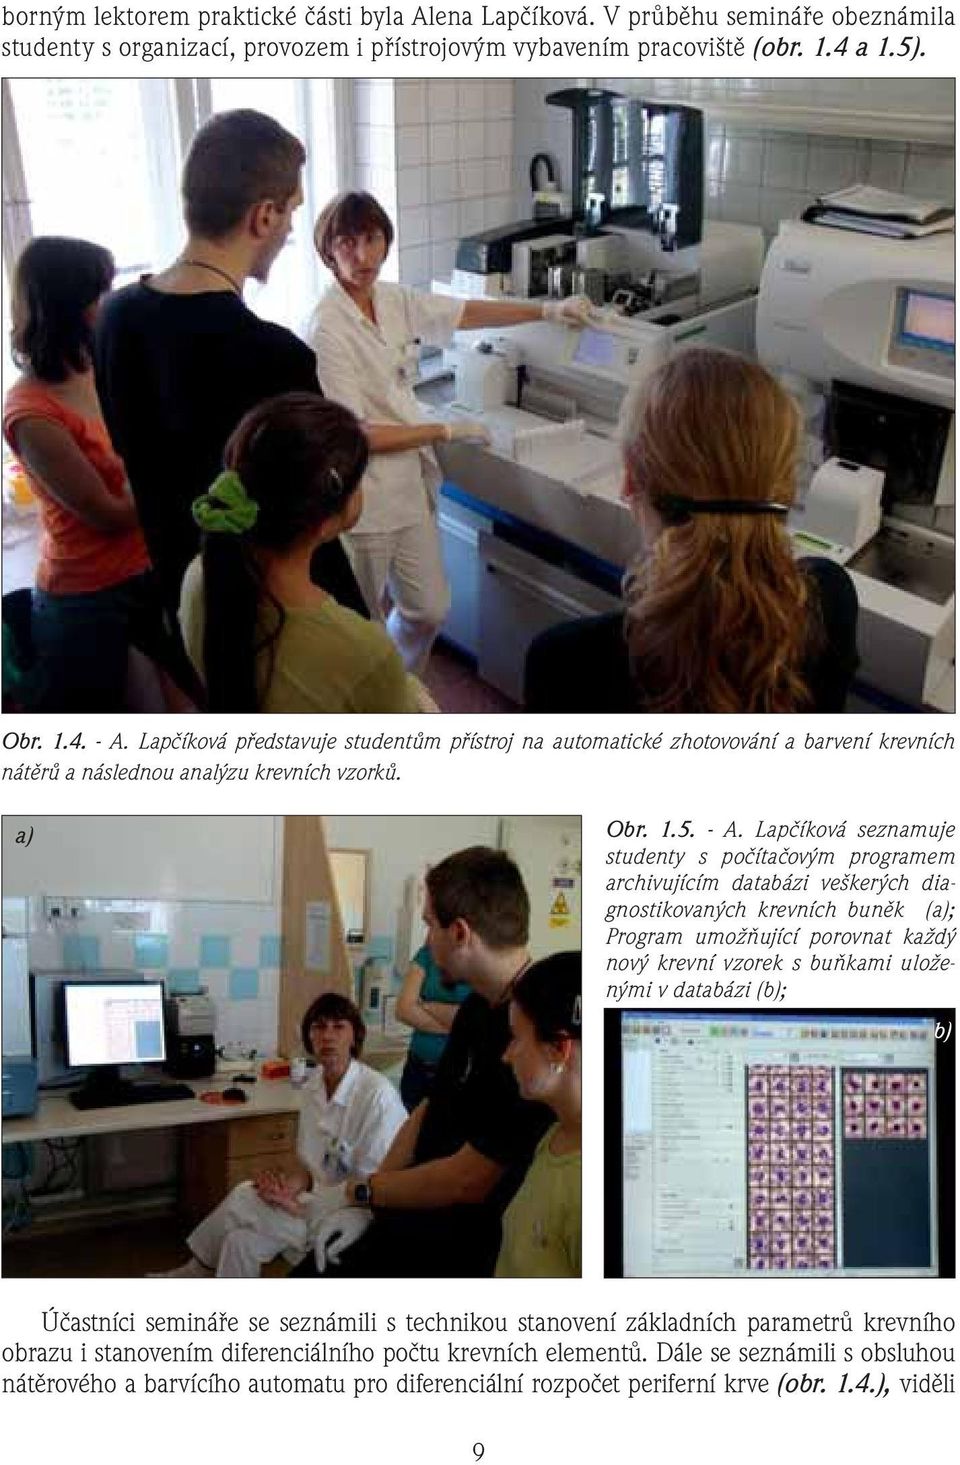 Lapčíková seznamuje studenty s počítačovým programem archivujícím databázi veškerých diagnostikovaných krevních buněk (a); Program umožňující porovnat každý nový krevní vzorek s buňkami uloženými v